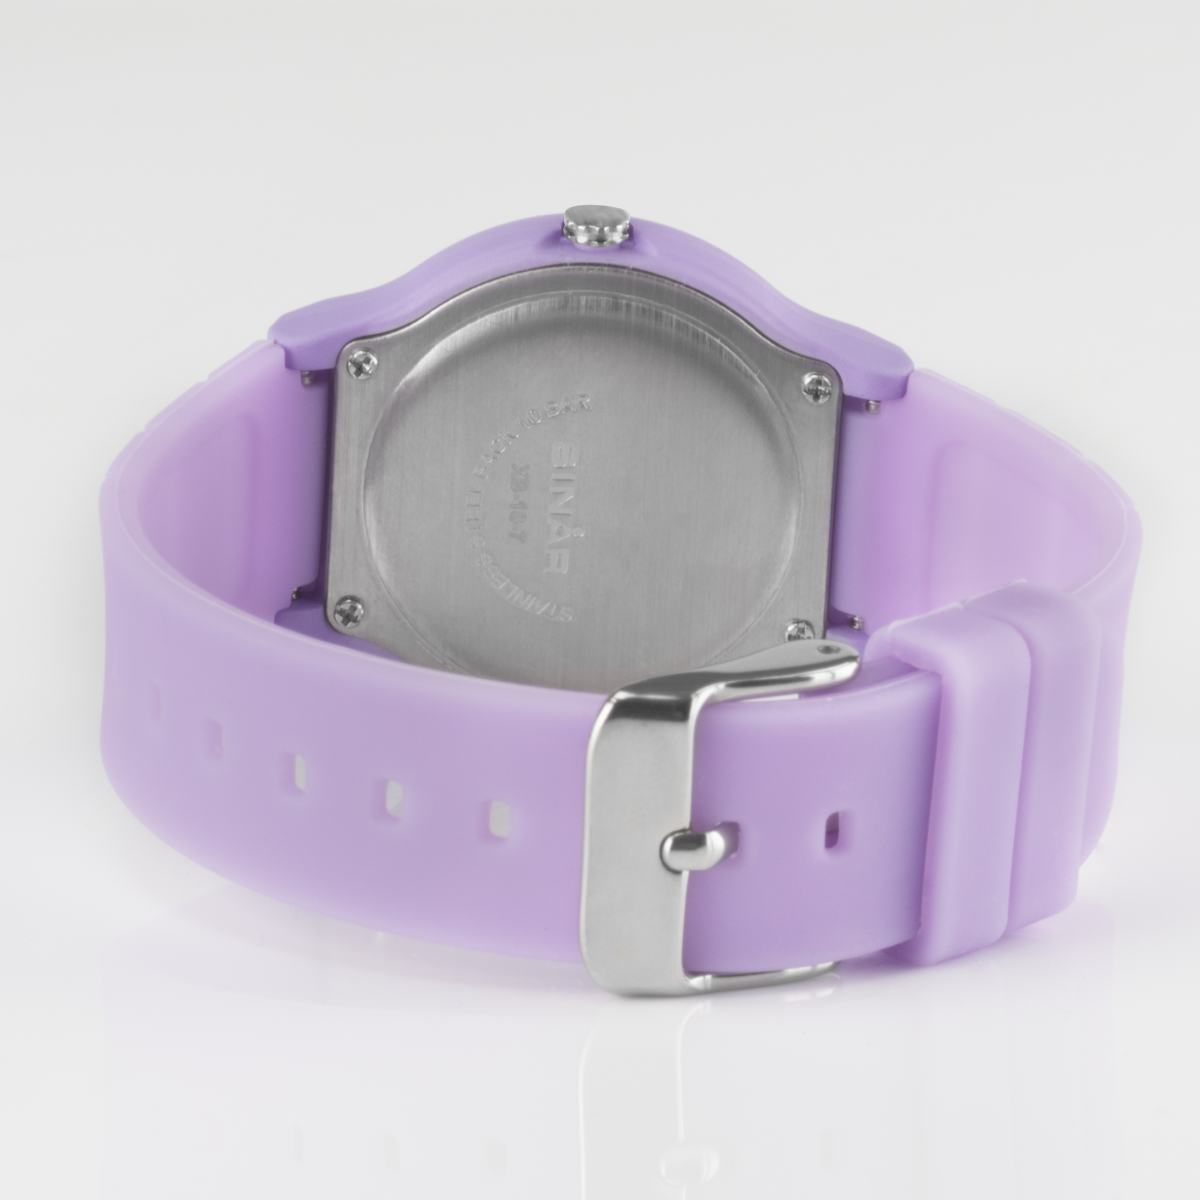 SINAR Jugenduhr Armbanduhr Analog Quarz Mädchen Silikonband XB-18-7 Li –  Preiswert24